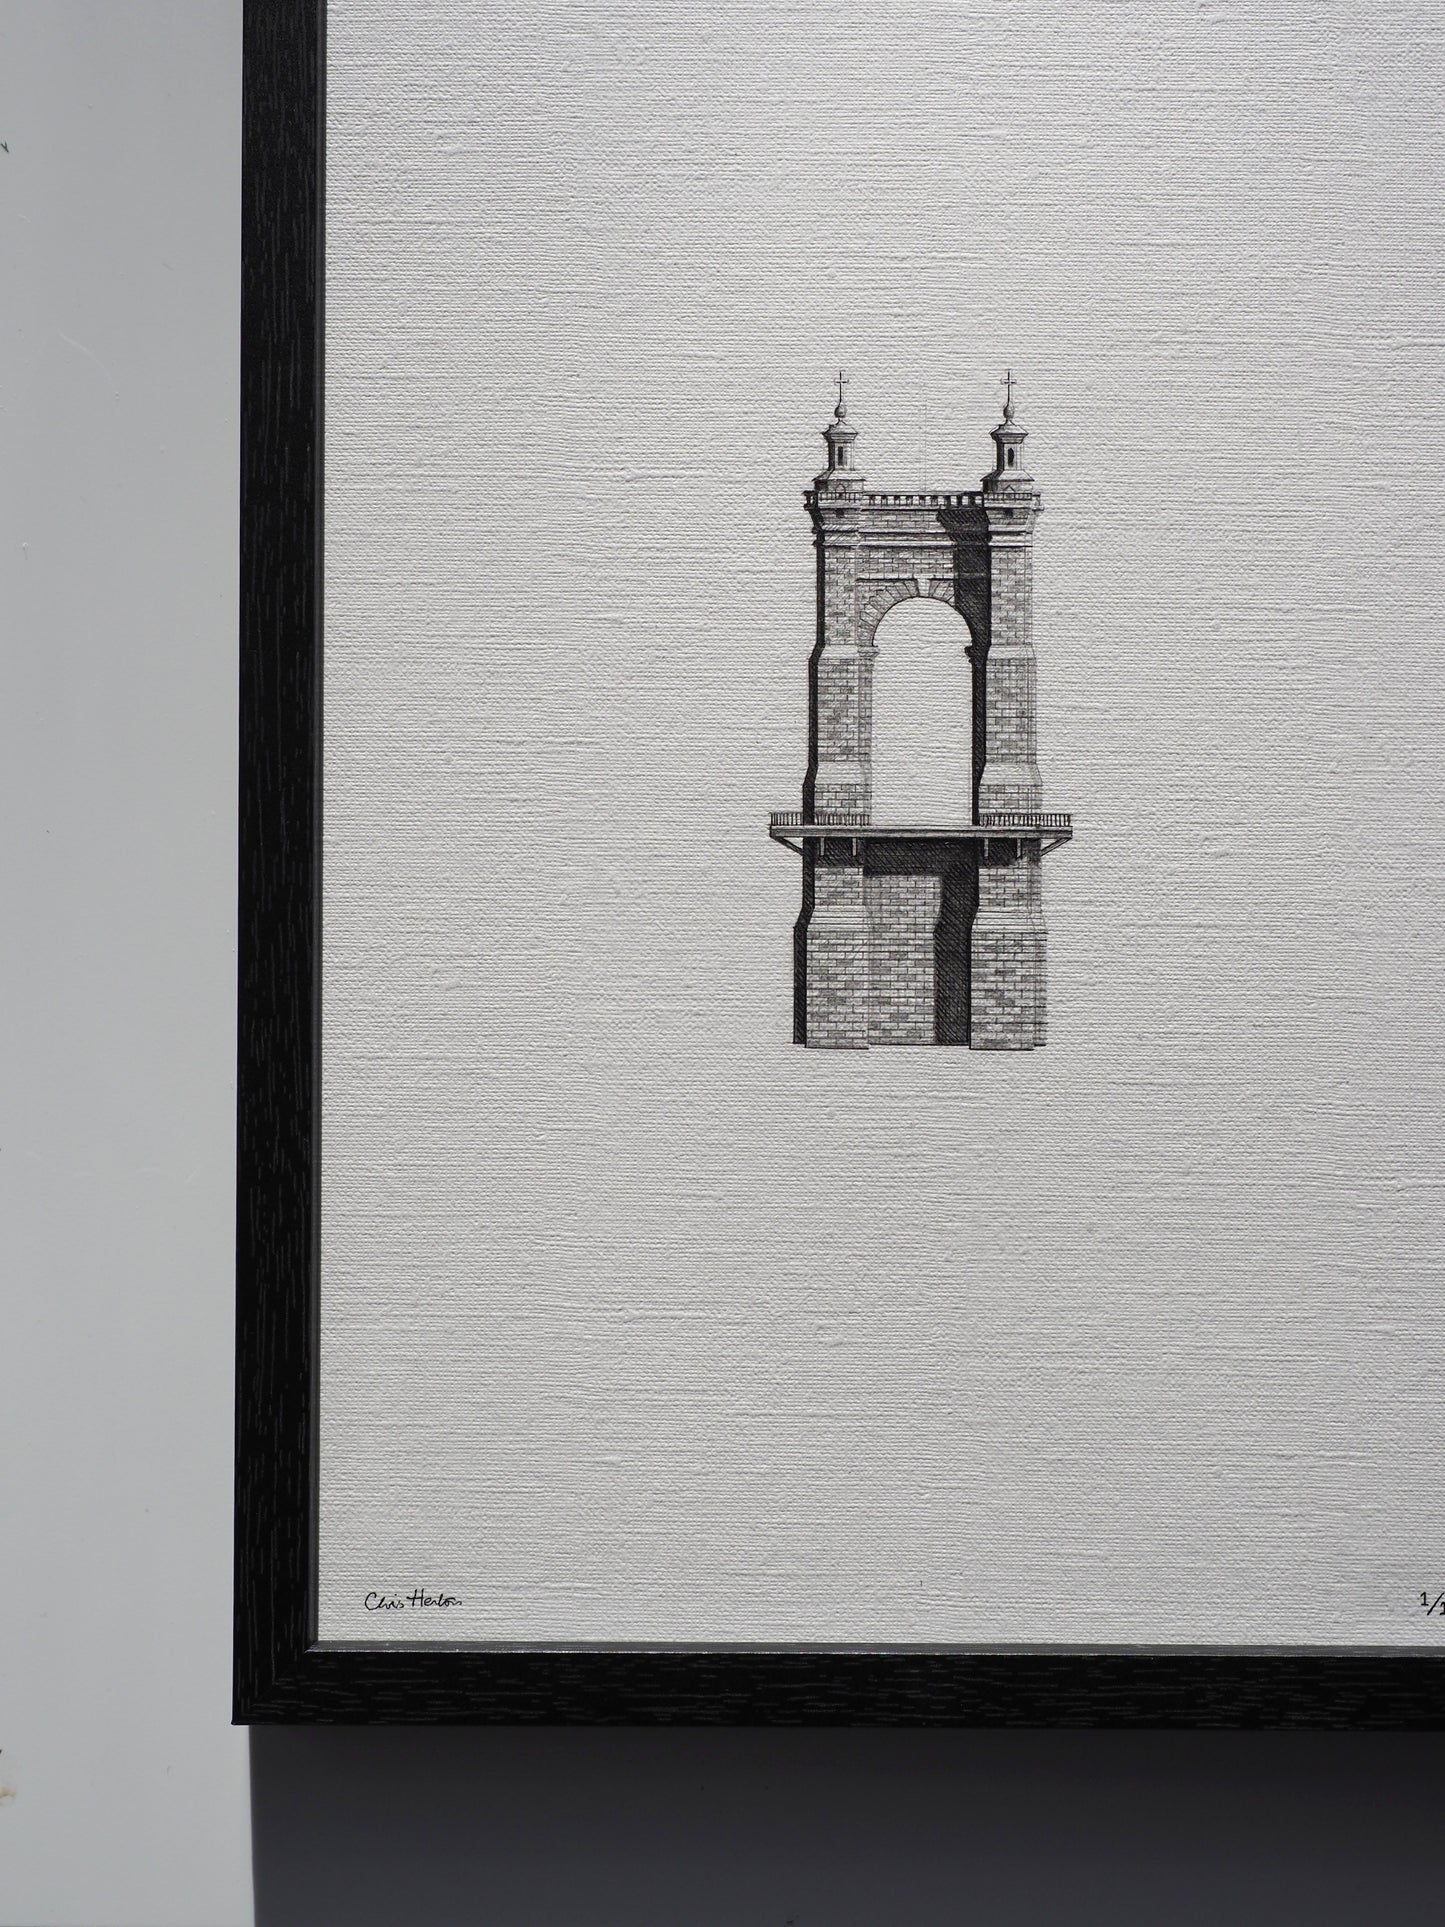 Roebling Suspension Bridge - Original Drawing